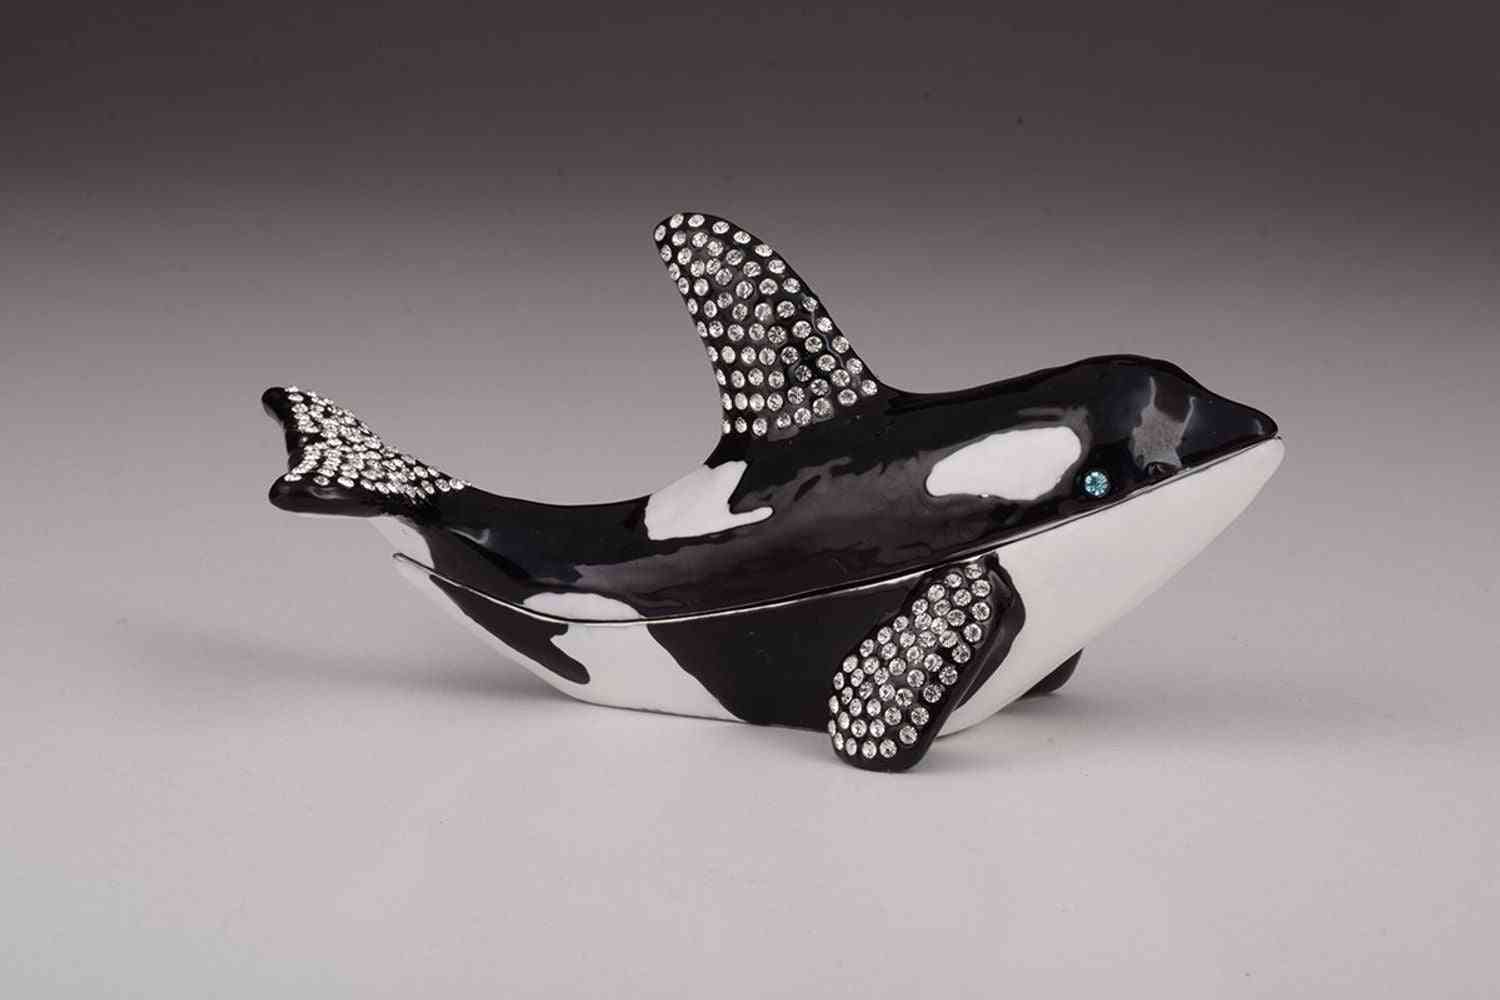 Orca baleia design-caixa de bugigangas